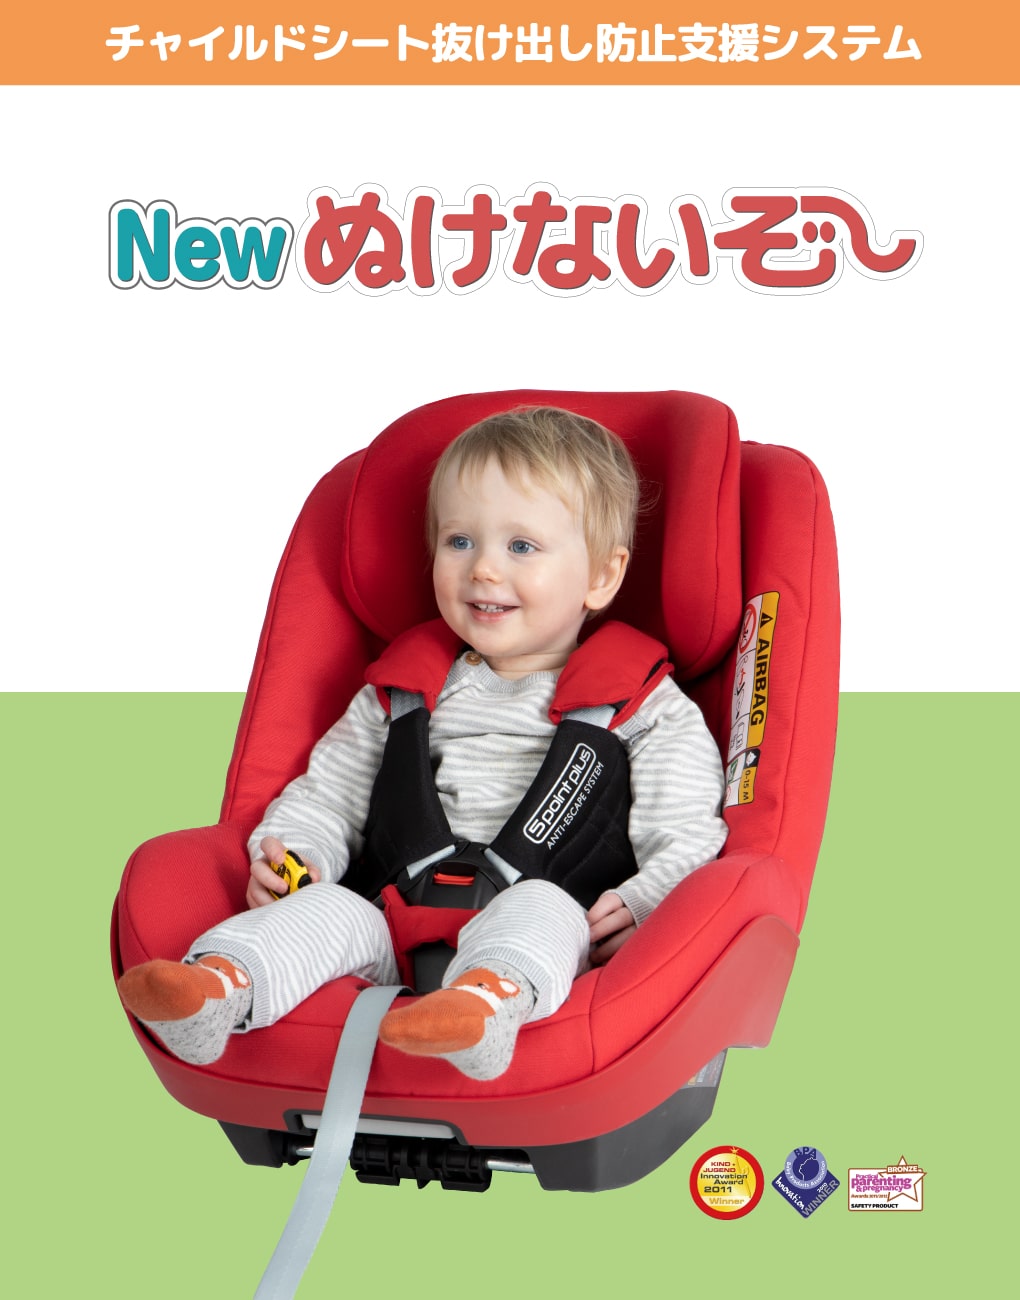 New ぬけないぞー：チャイルドシート抜け出し防止支援システム  チャイルドシート補助用品  日本育児：ベビーのために世界から